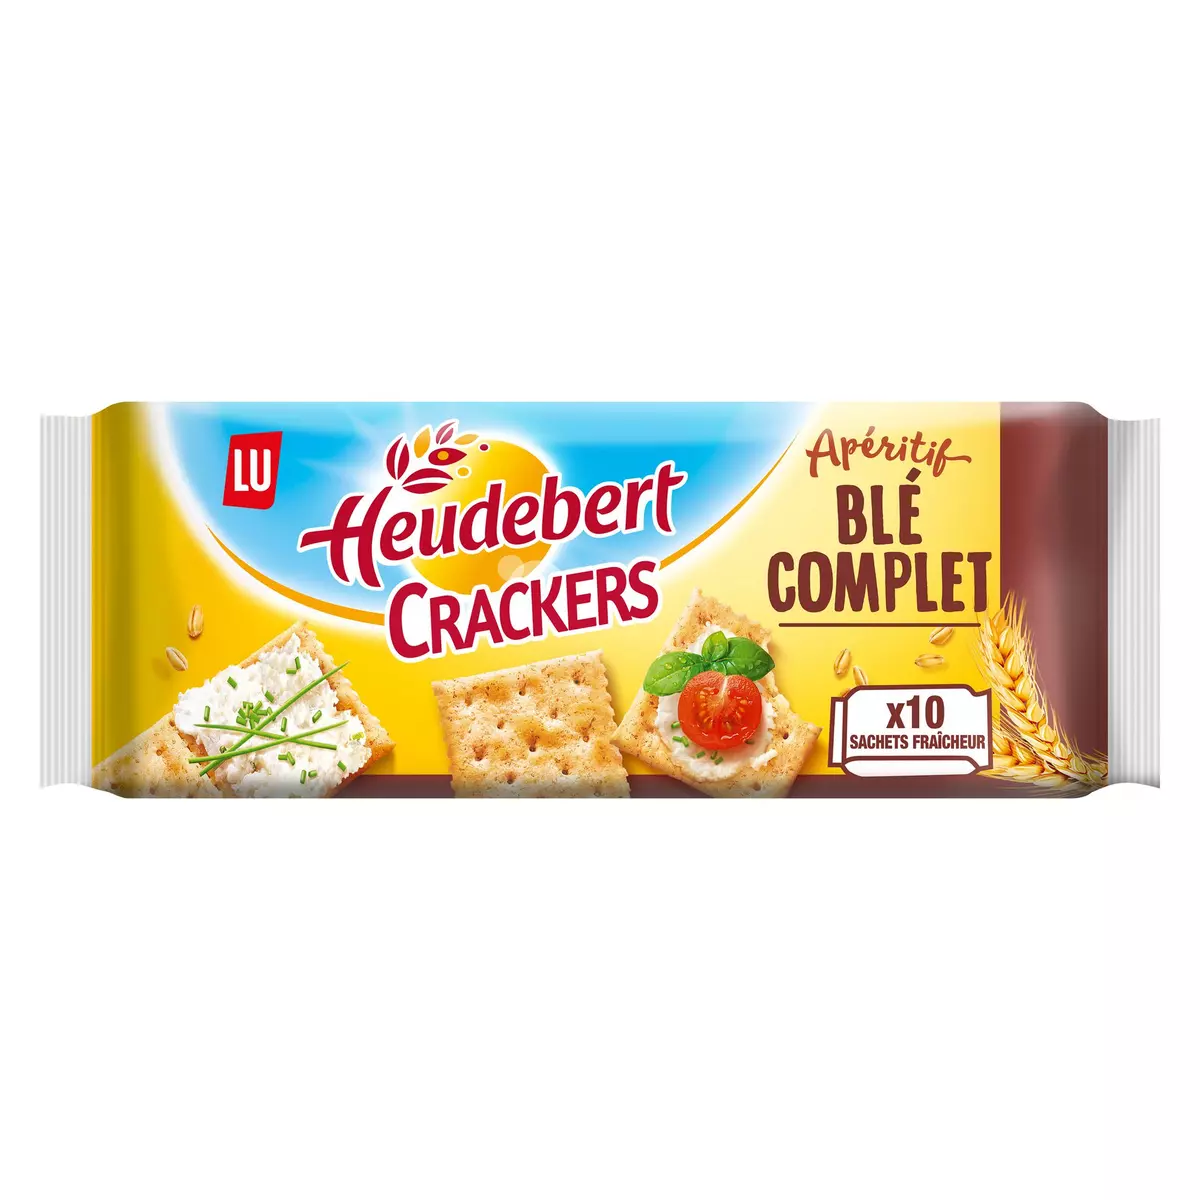 HEUDEBERT Crackers apéritifs au blé complet sachets fraîcheur 10 sachets 250g